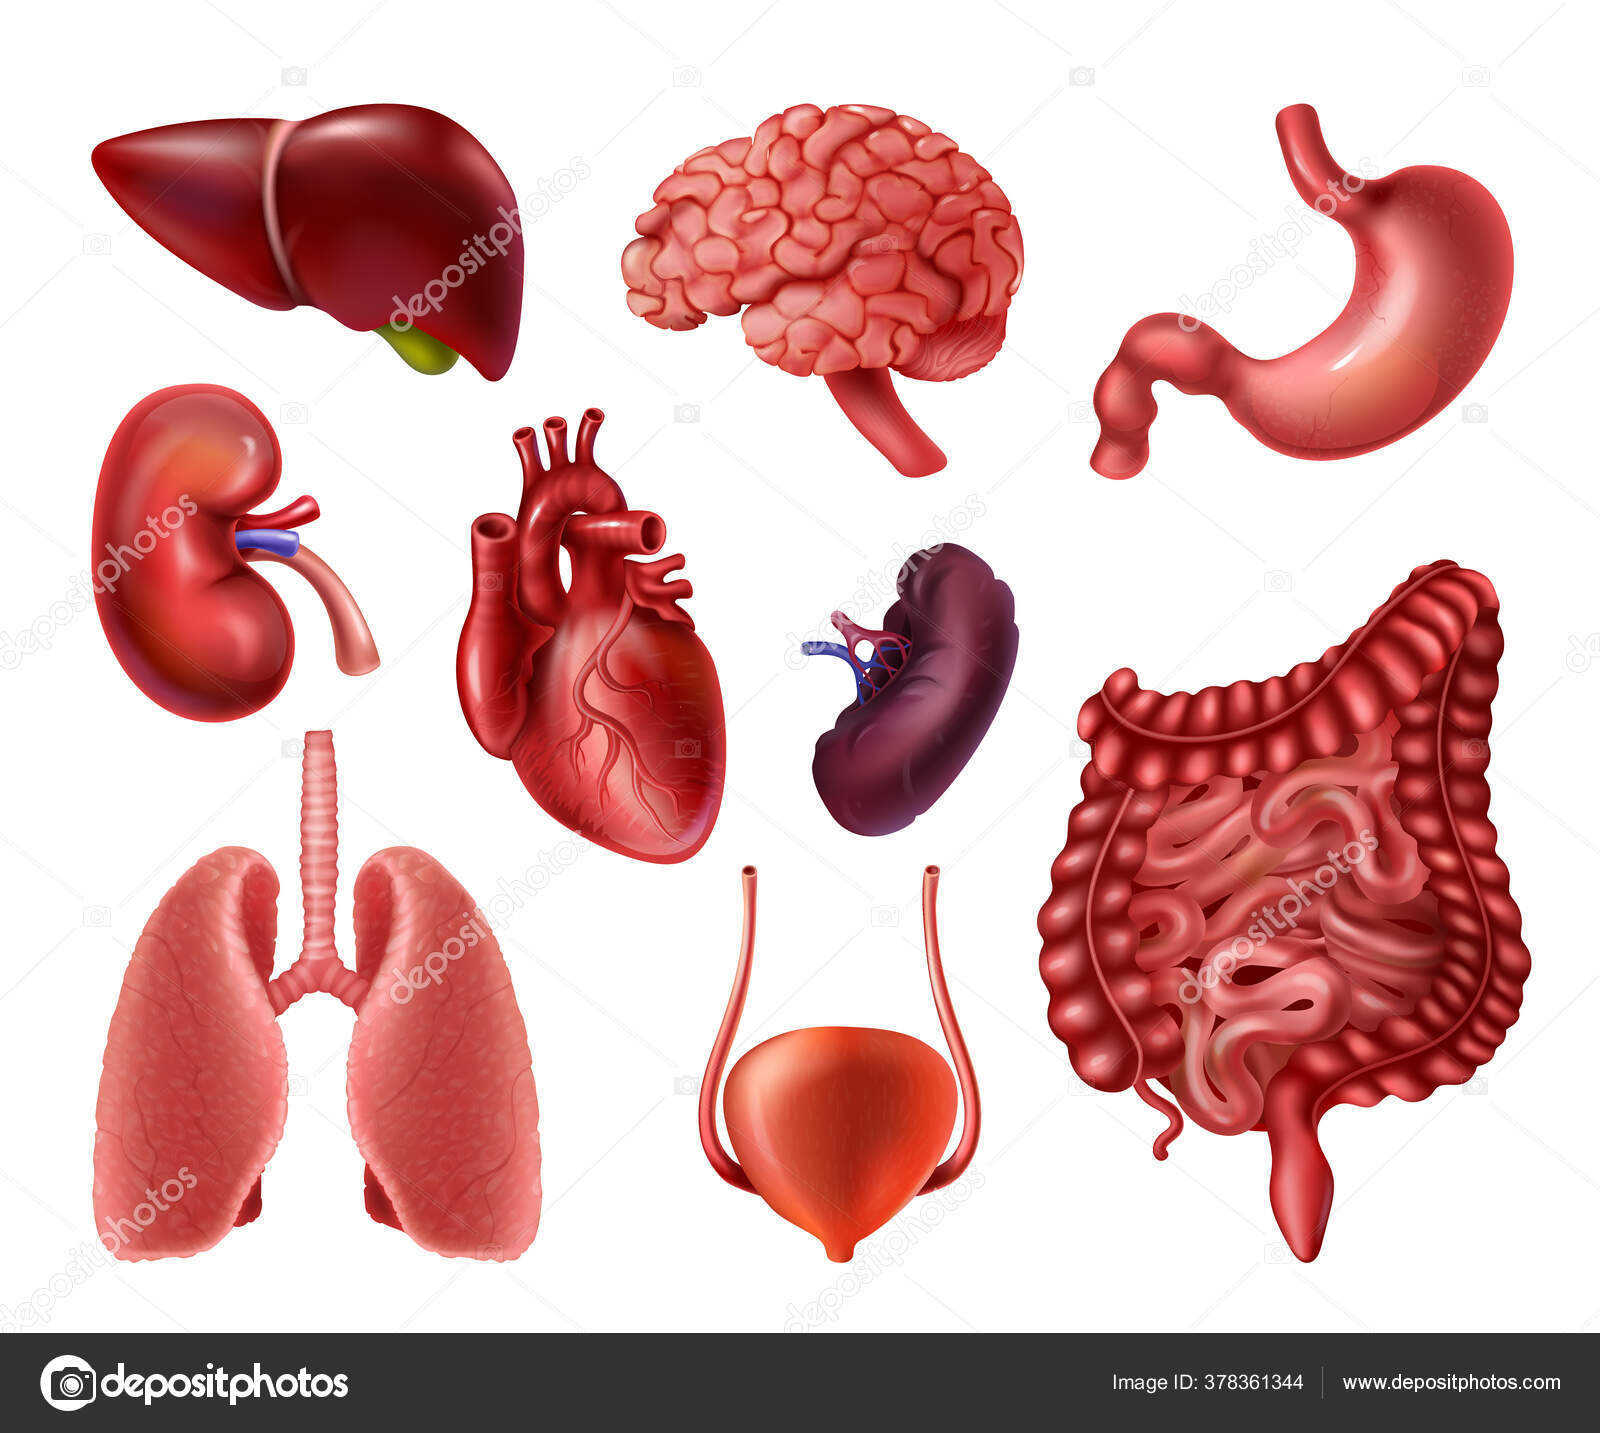 Сердце печень легкое. Органы человека. Внутренние органы. Органы человека по отдельности. Органы человека поотденльнлсти.